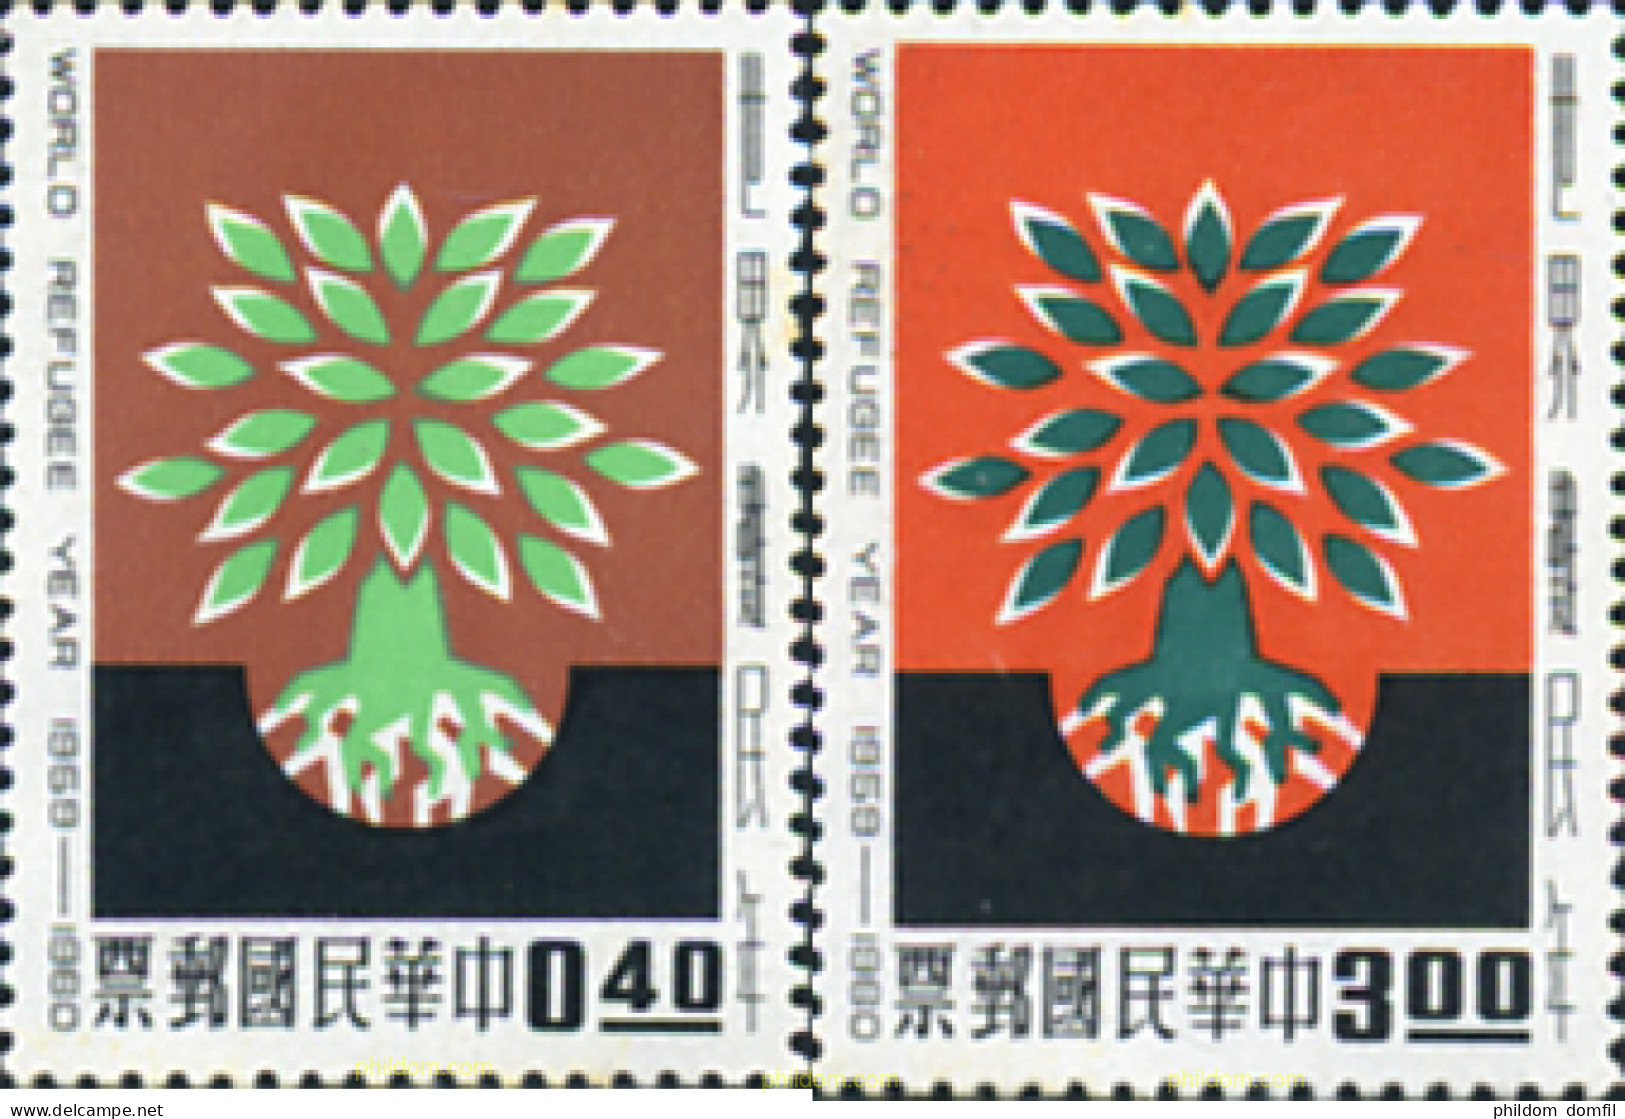 314562 MNH CHINA. FORMOSA-TAIWAN 1960 AÑO DE LOS REFUGIADOS - Unused Stamps